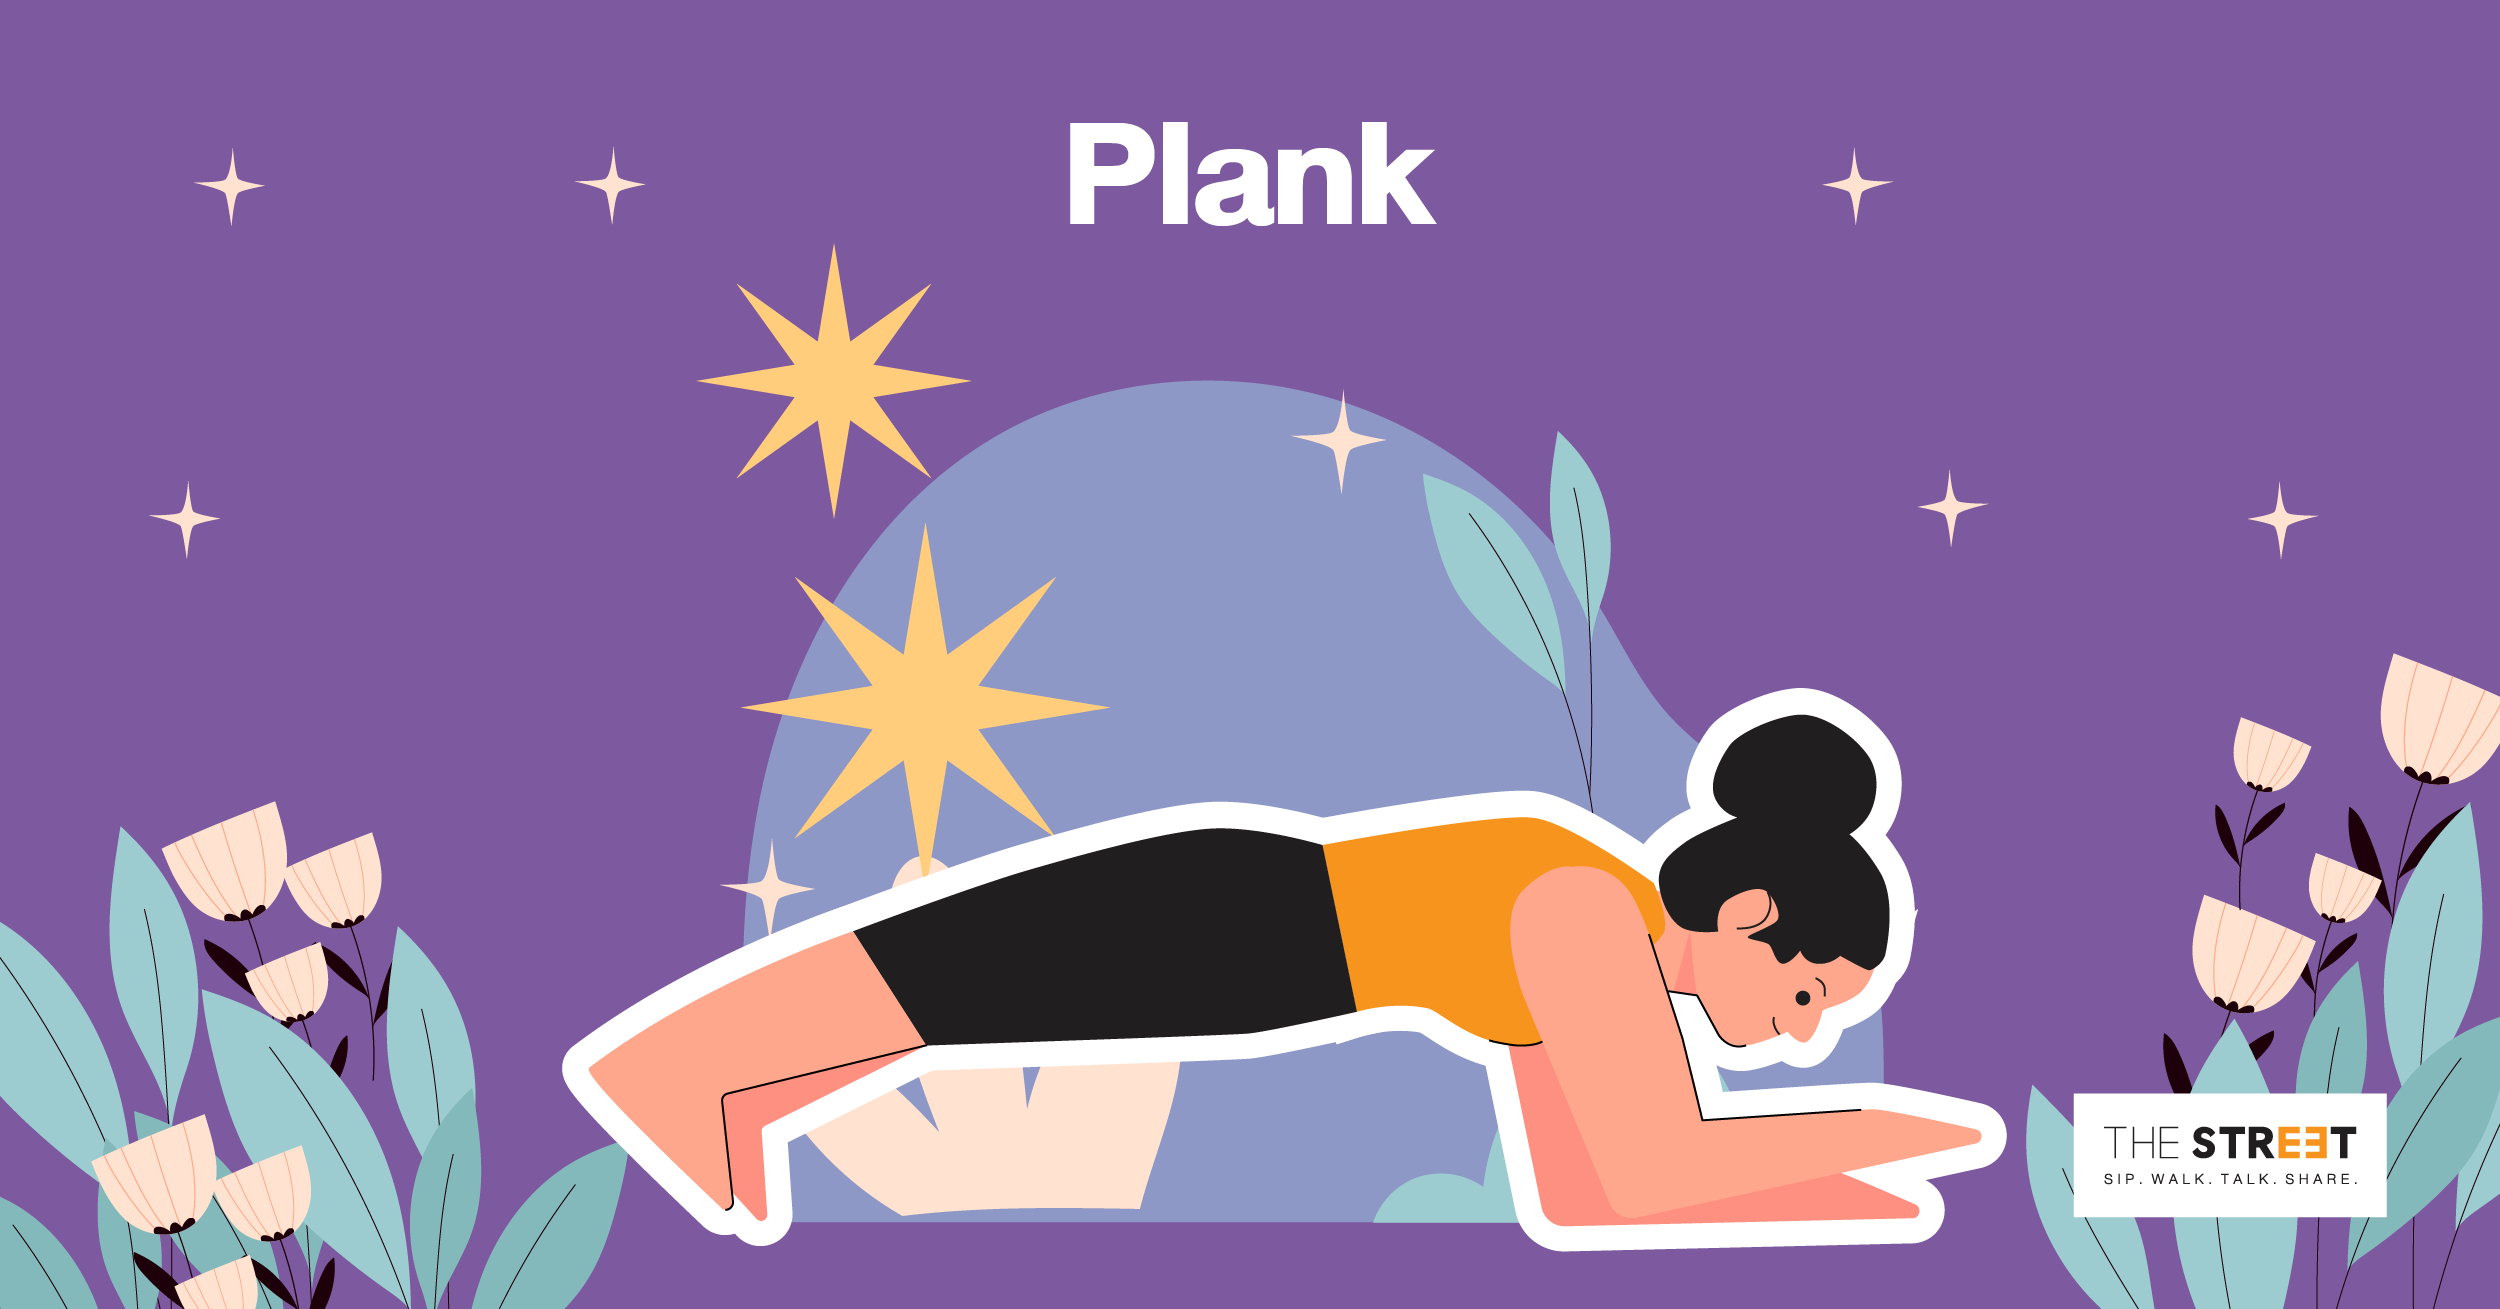 ท่าออกกำลังกาย-ลดพุง-plank